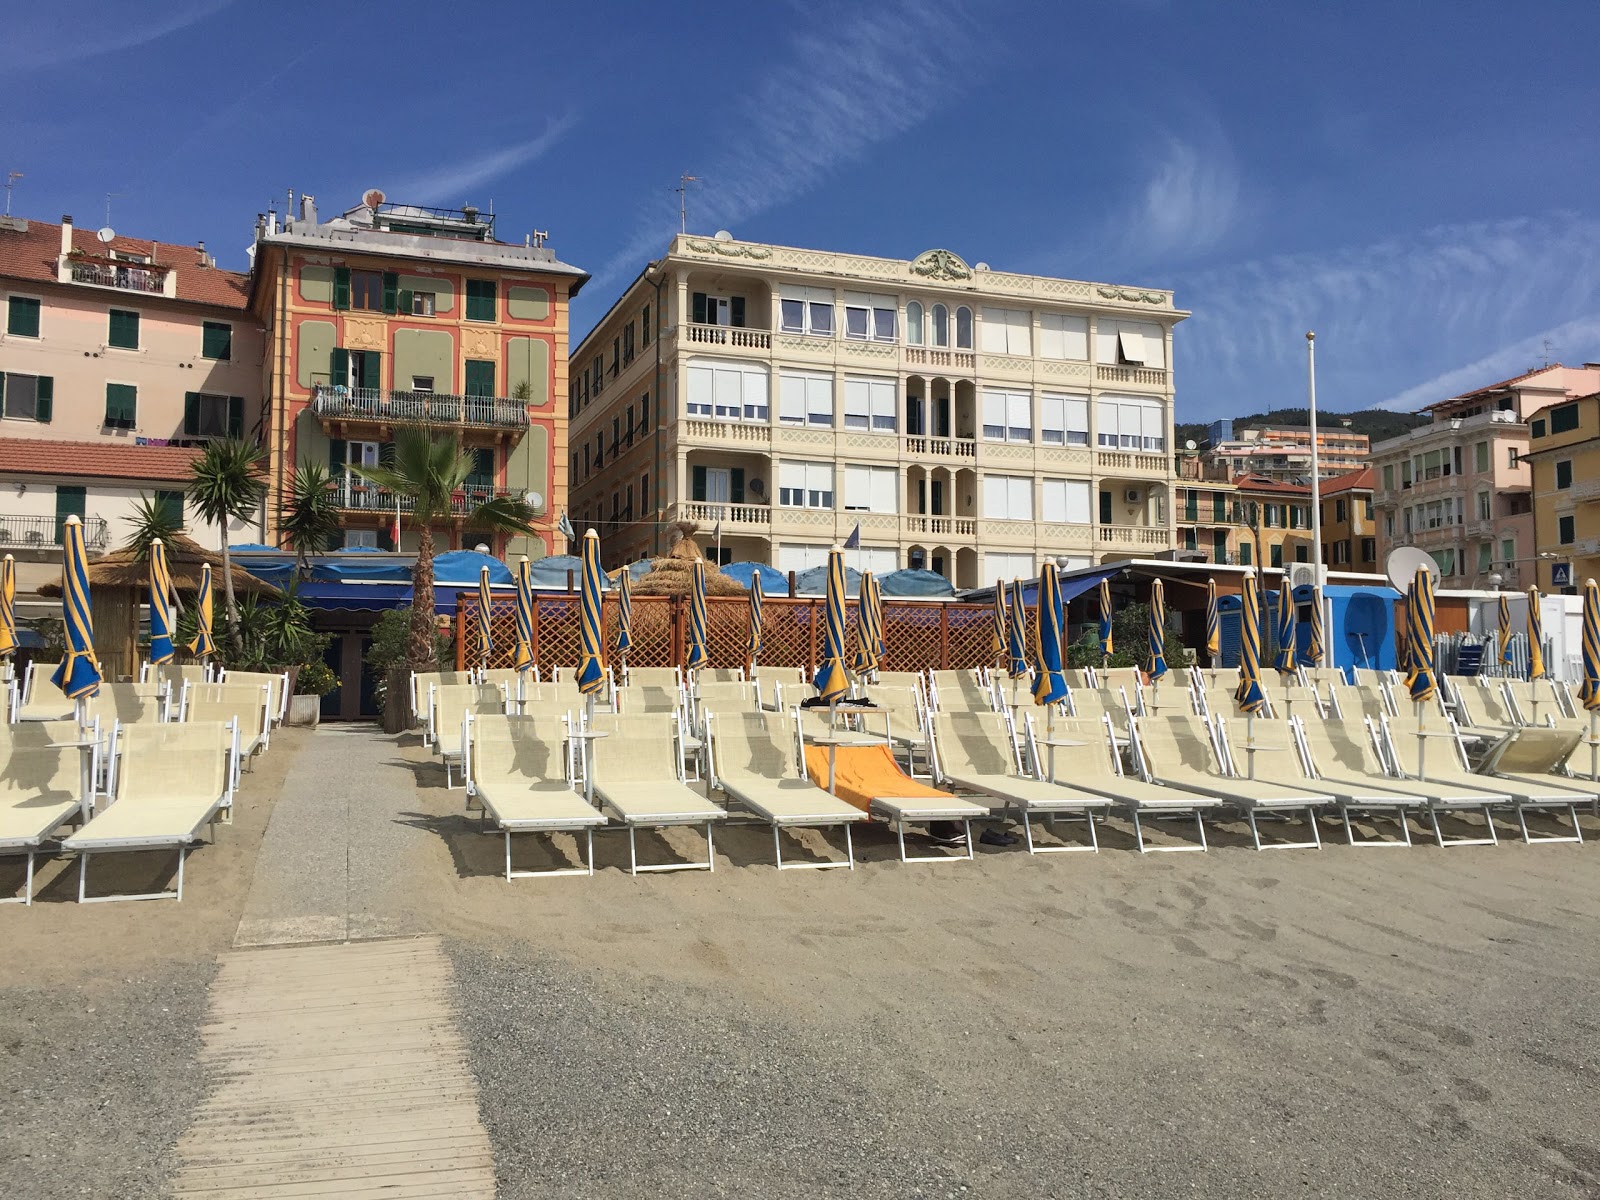 Foto de Spiaggia Varazze área de complejo turístico de playa